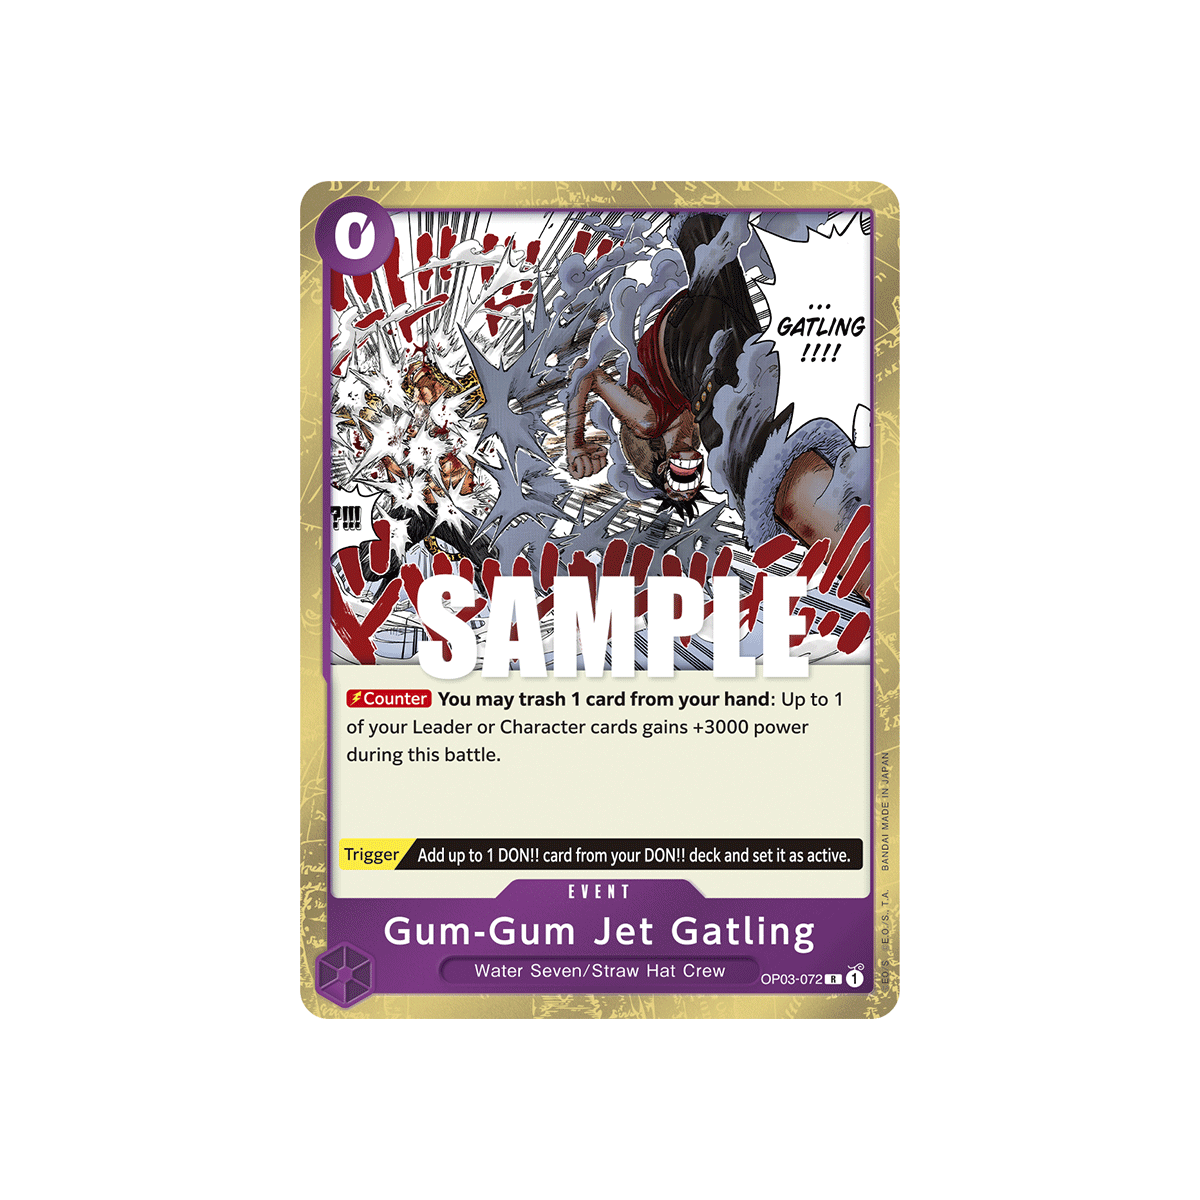 Gum-Gum Jet Gatling: Carte One Piece PILLARS OF STRENGTH N°OP03-072